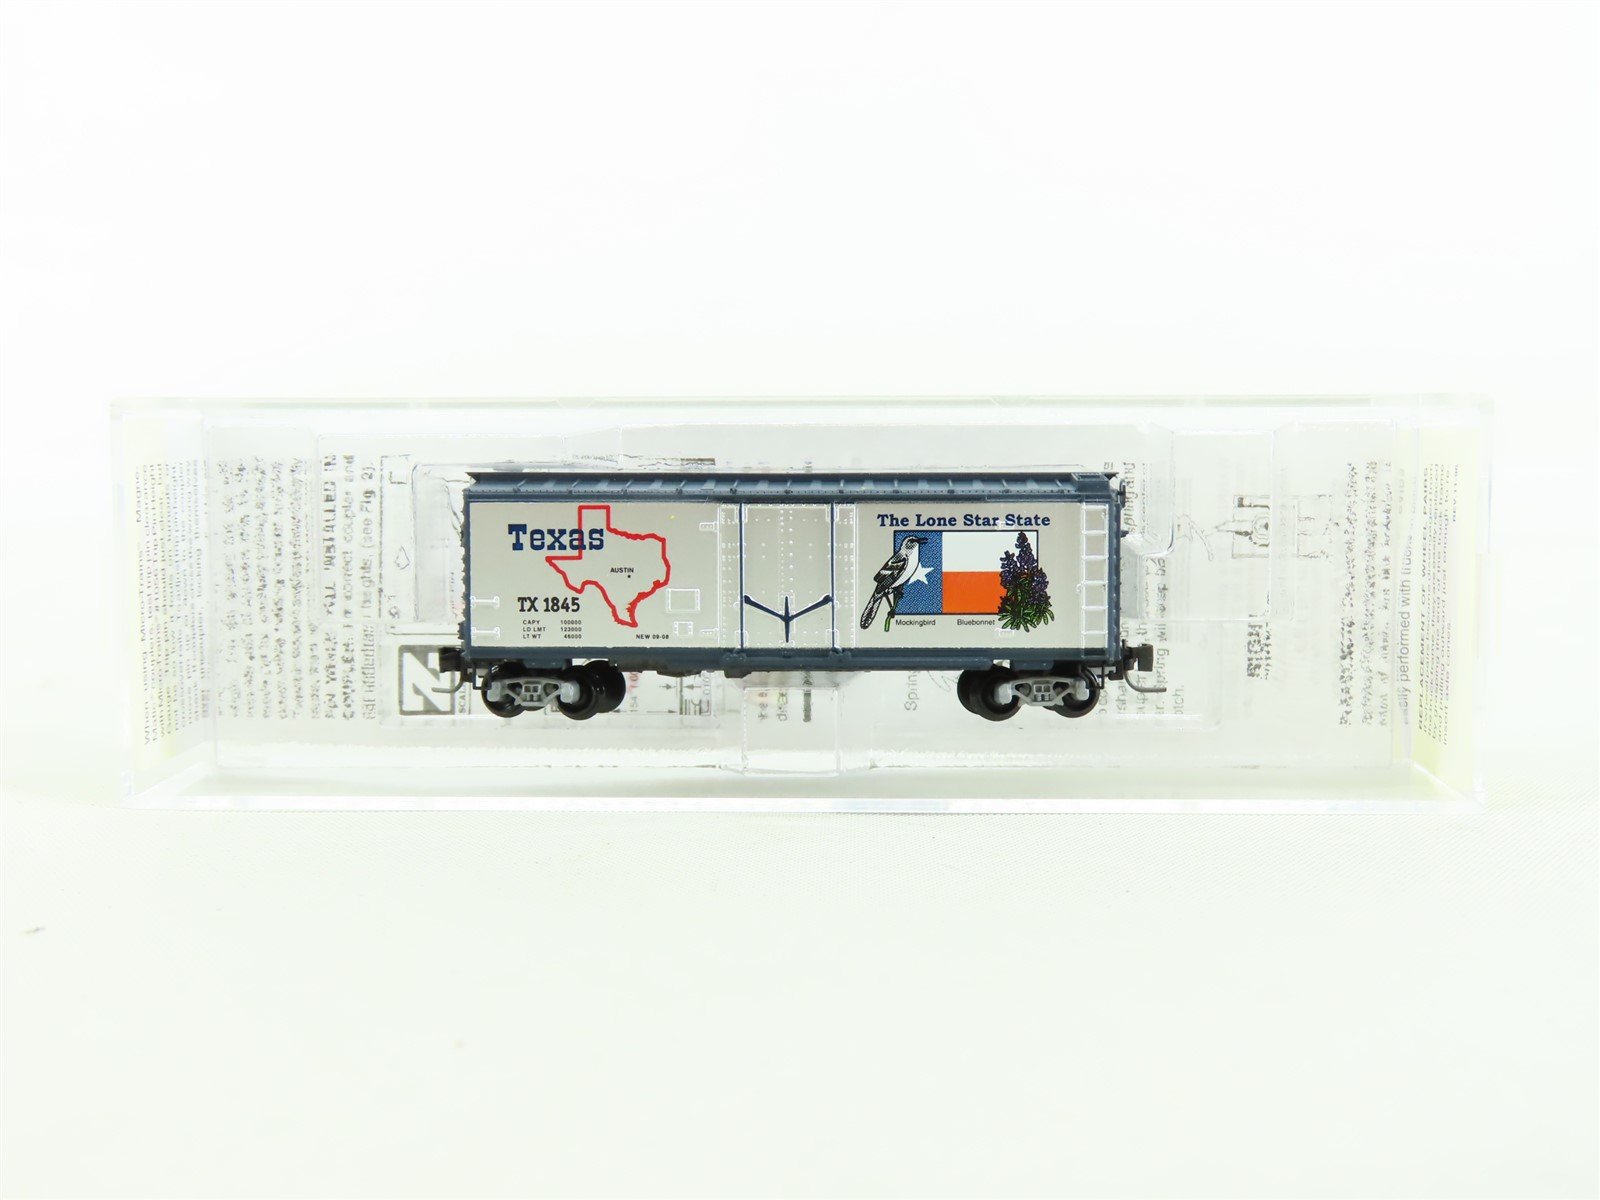 Z Scale Micro-Trains MTL 50200503 TX Texas "Lone Star State" 40' Box Car #1845